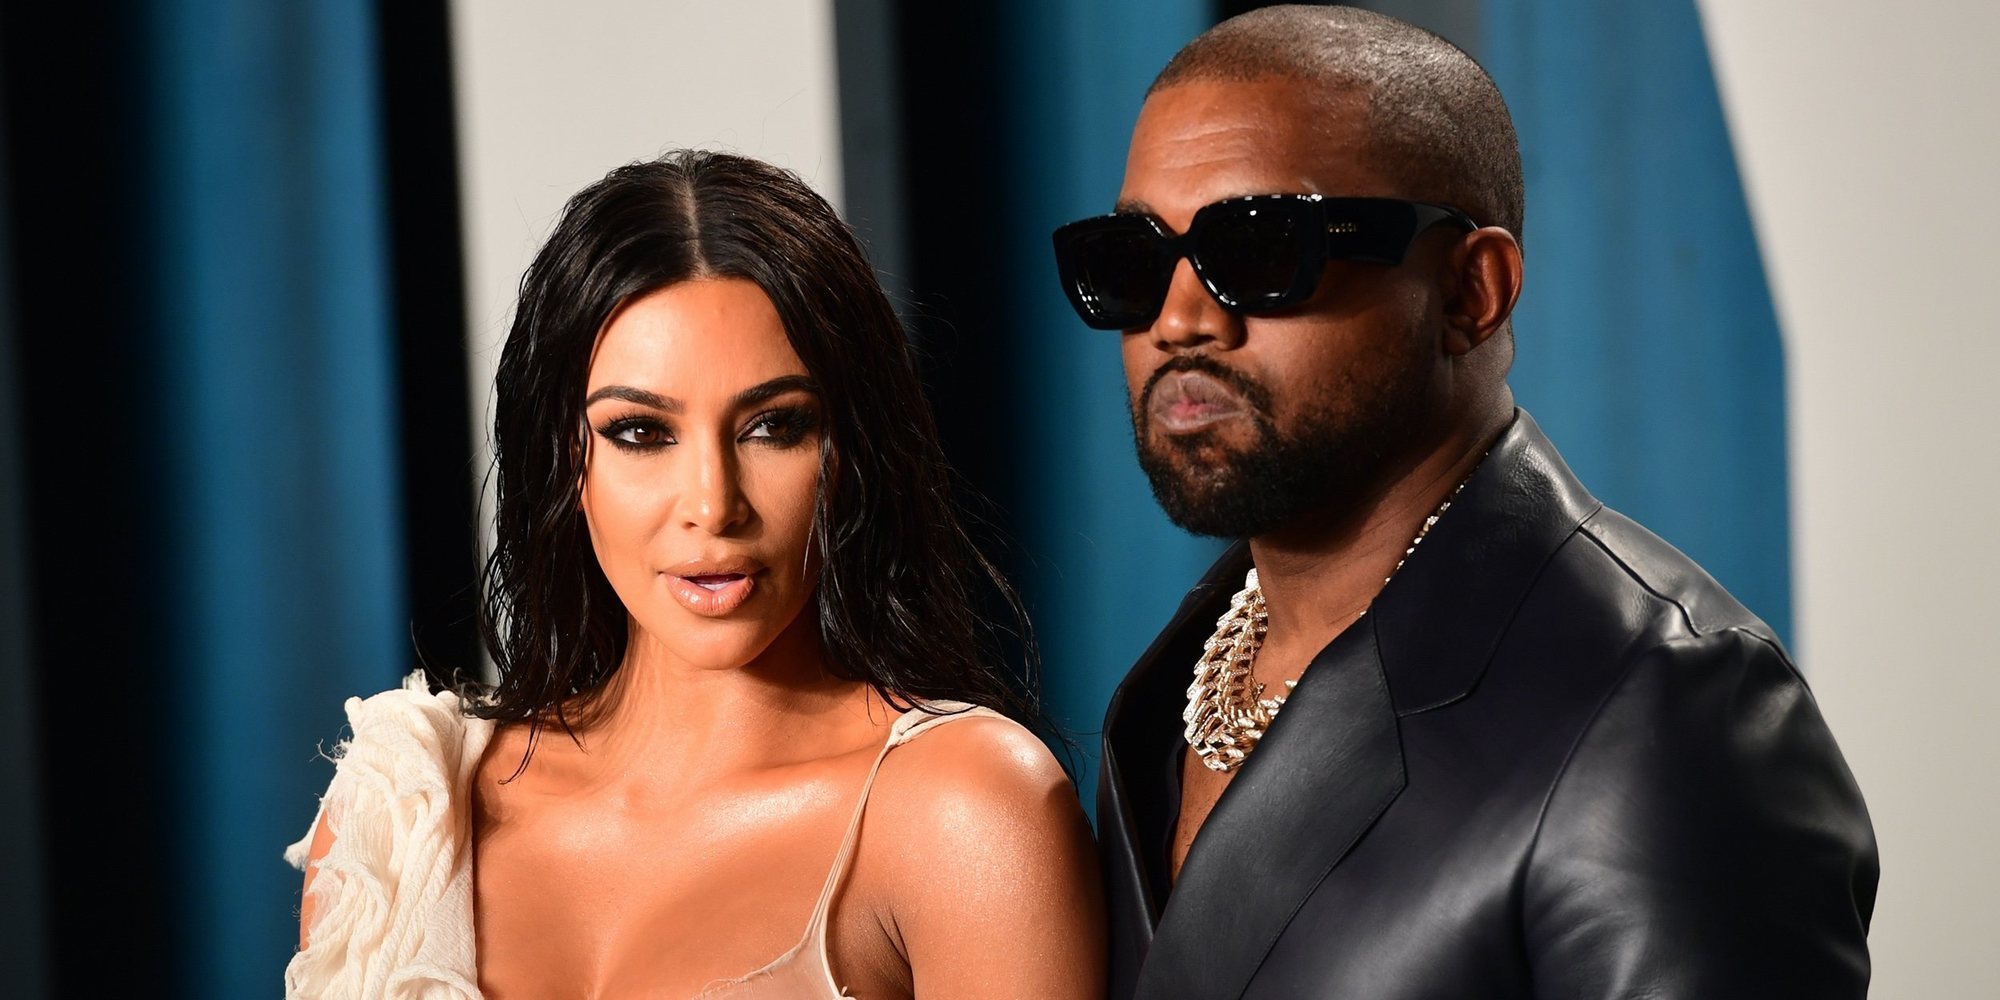 El divorcio de Kim Kardashian y Kanye West, el plato fuerte de la última temporada de 'KUWTK'